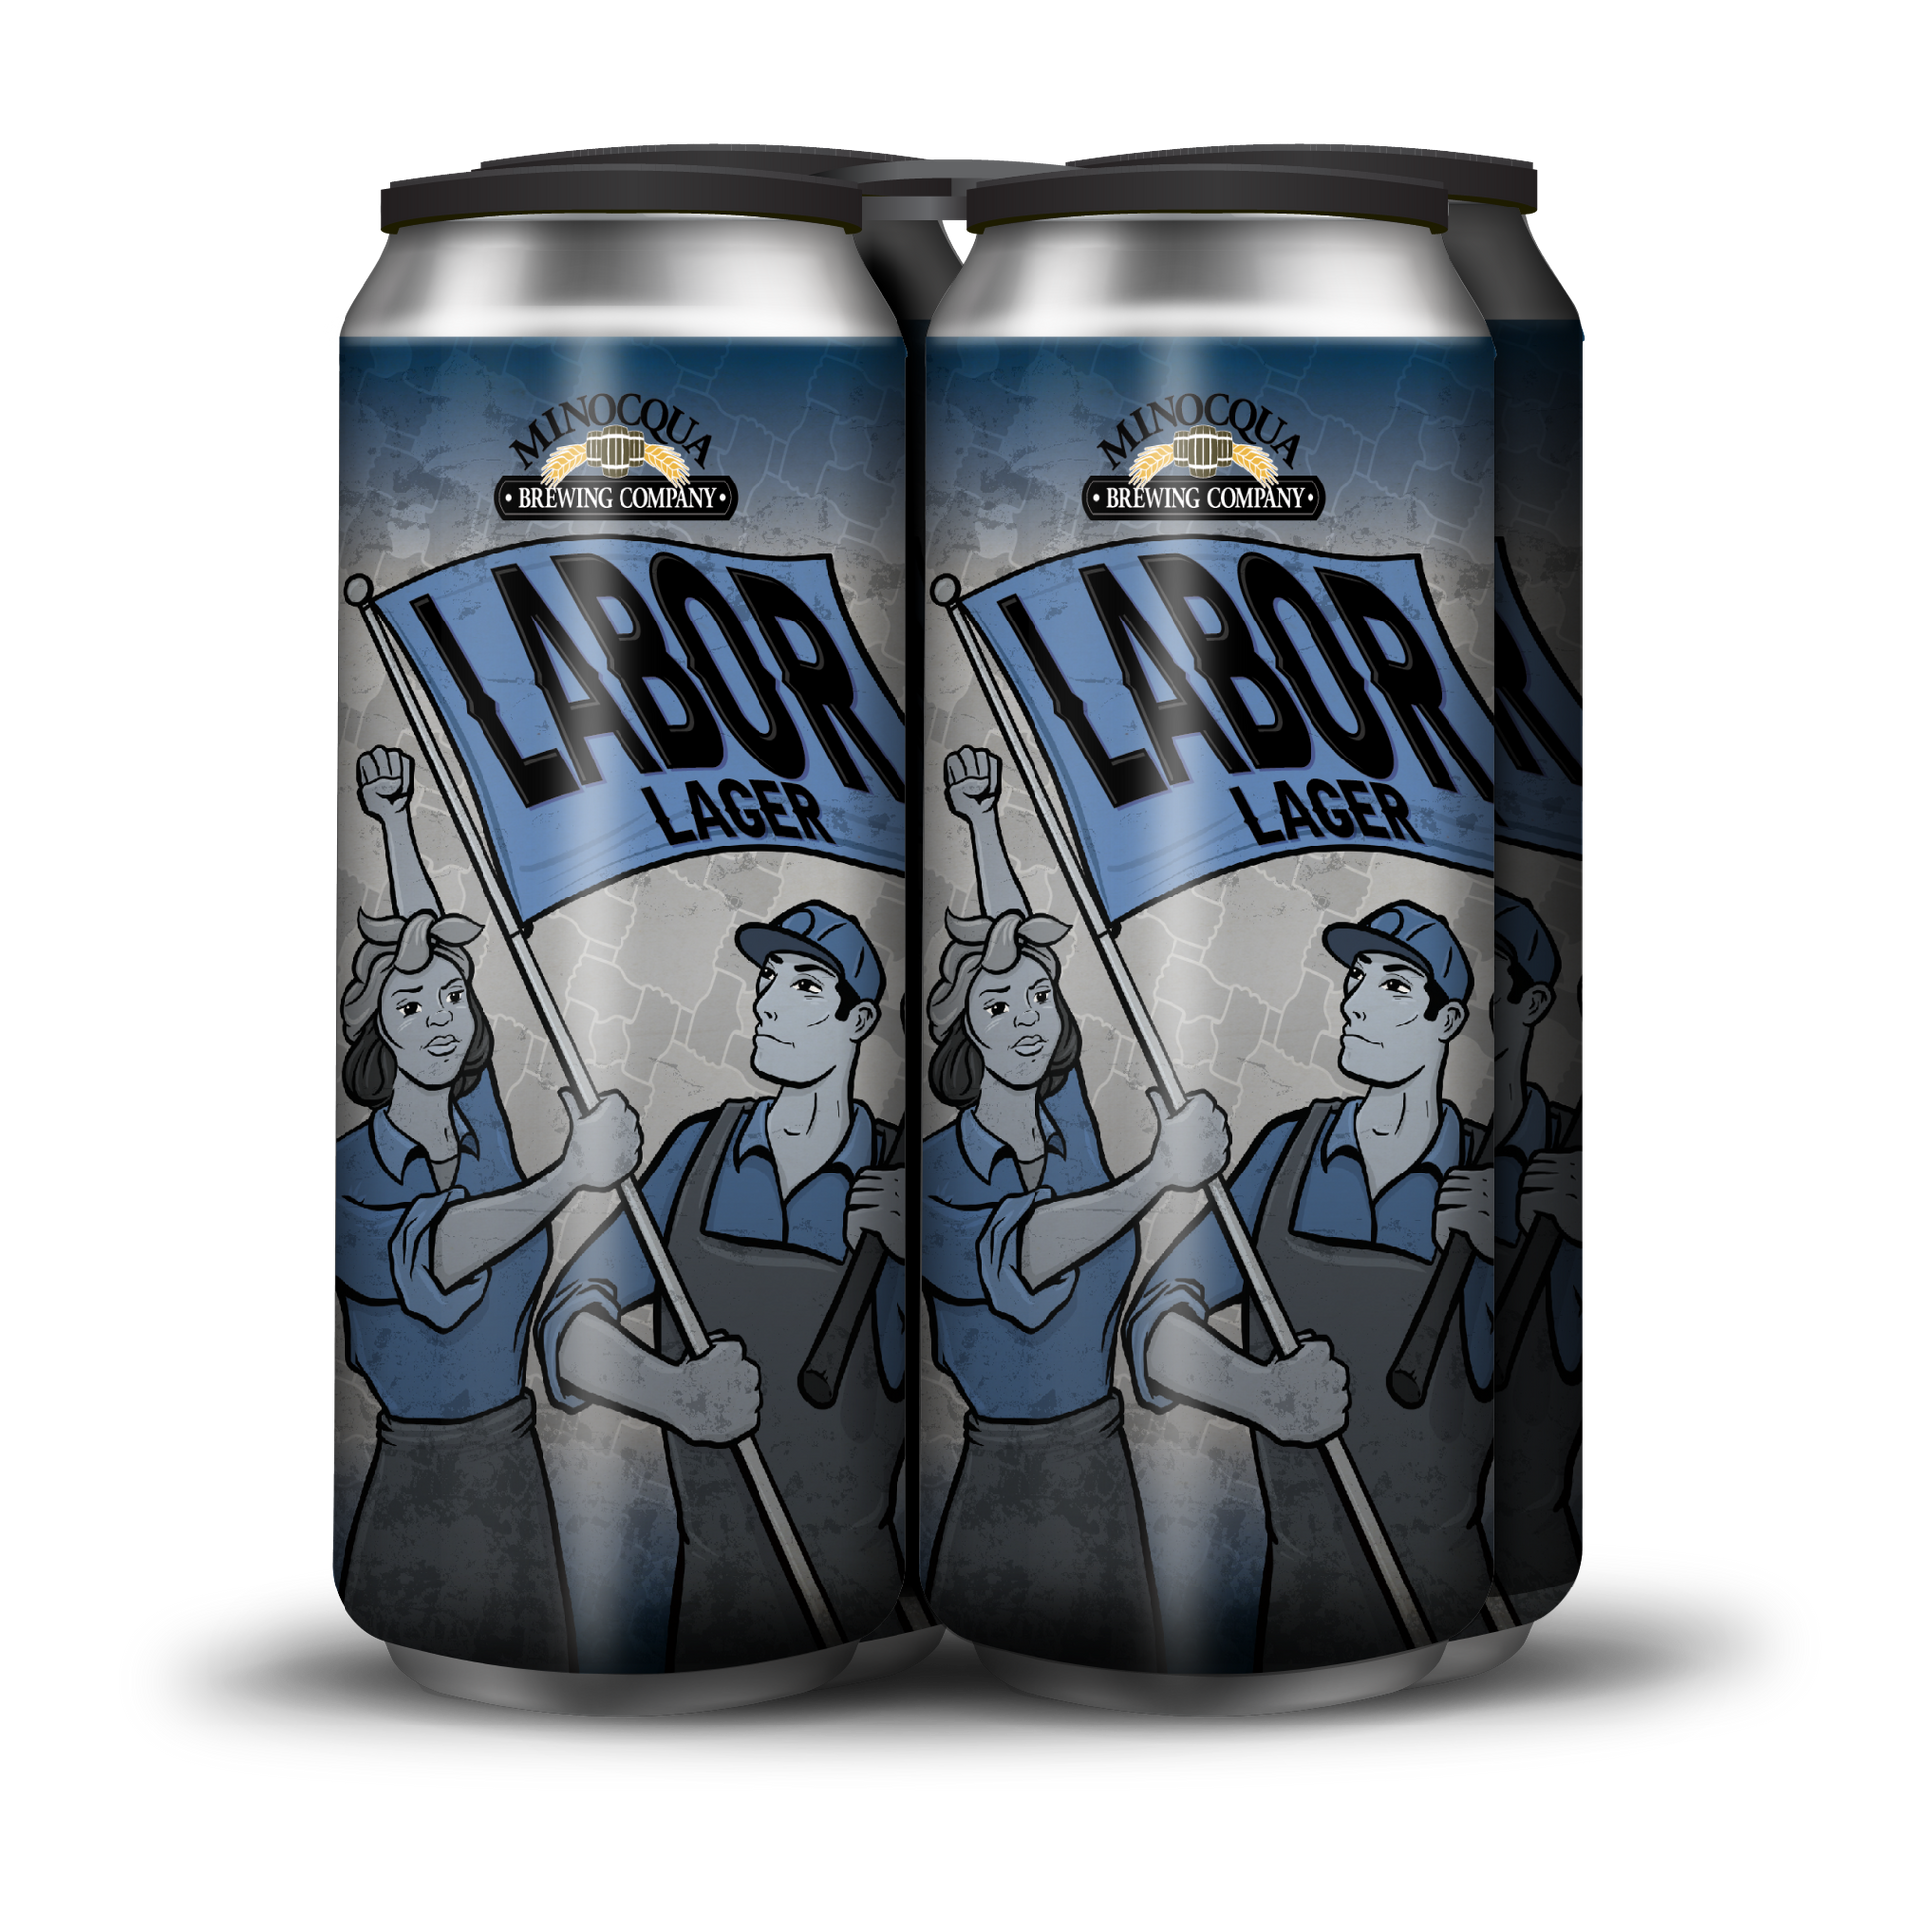 minocqua-brewing-company-labor-lager